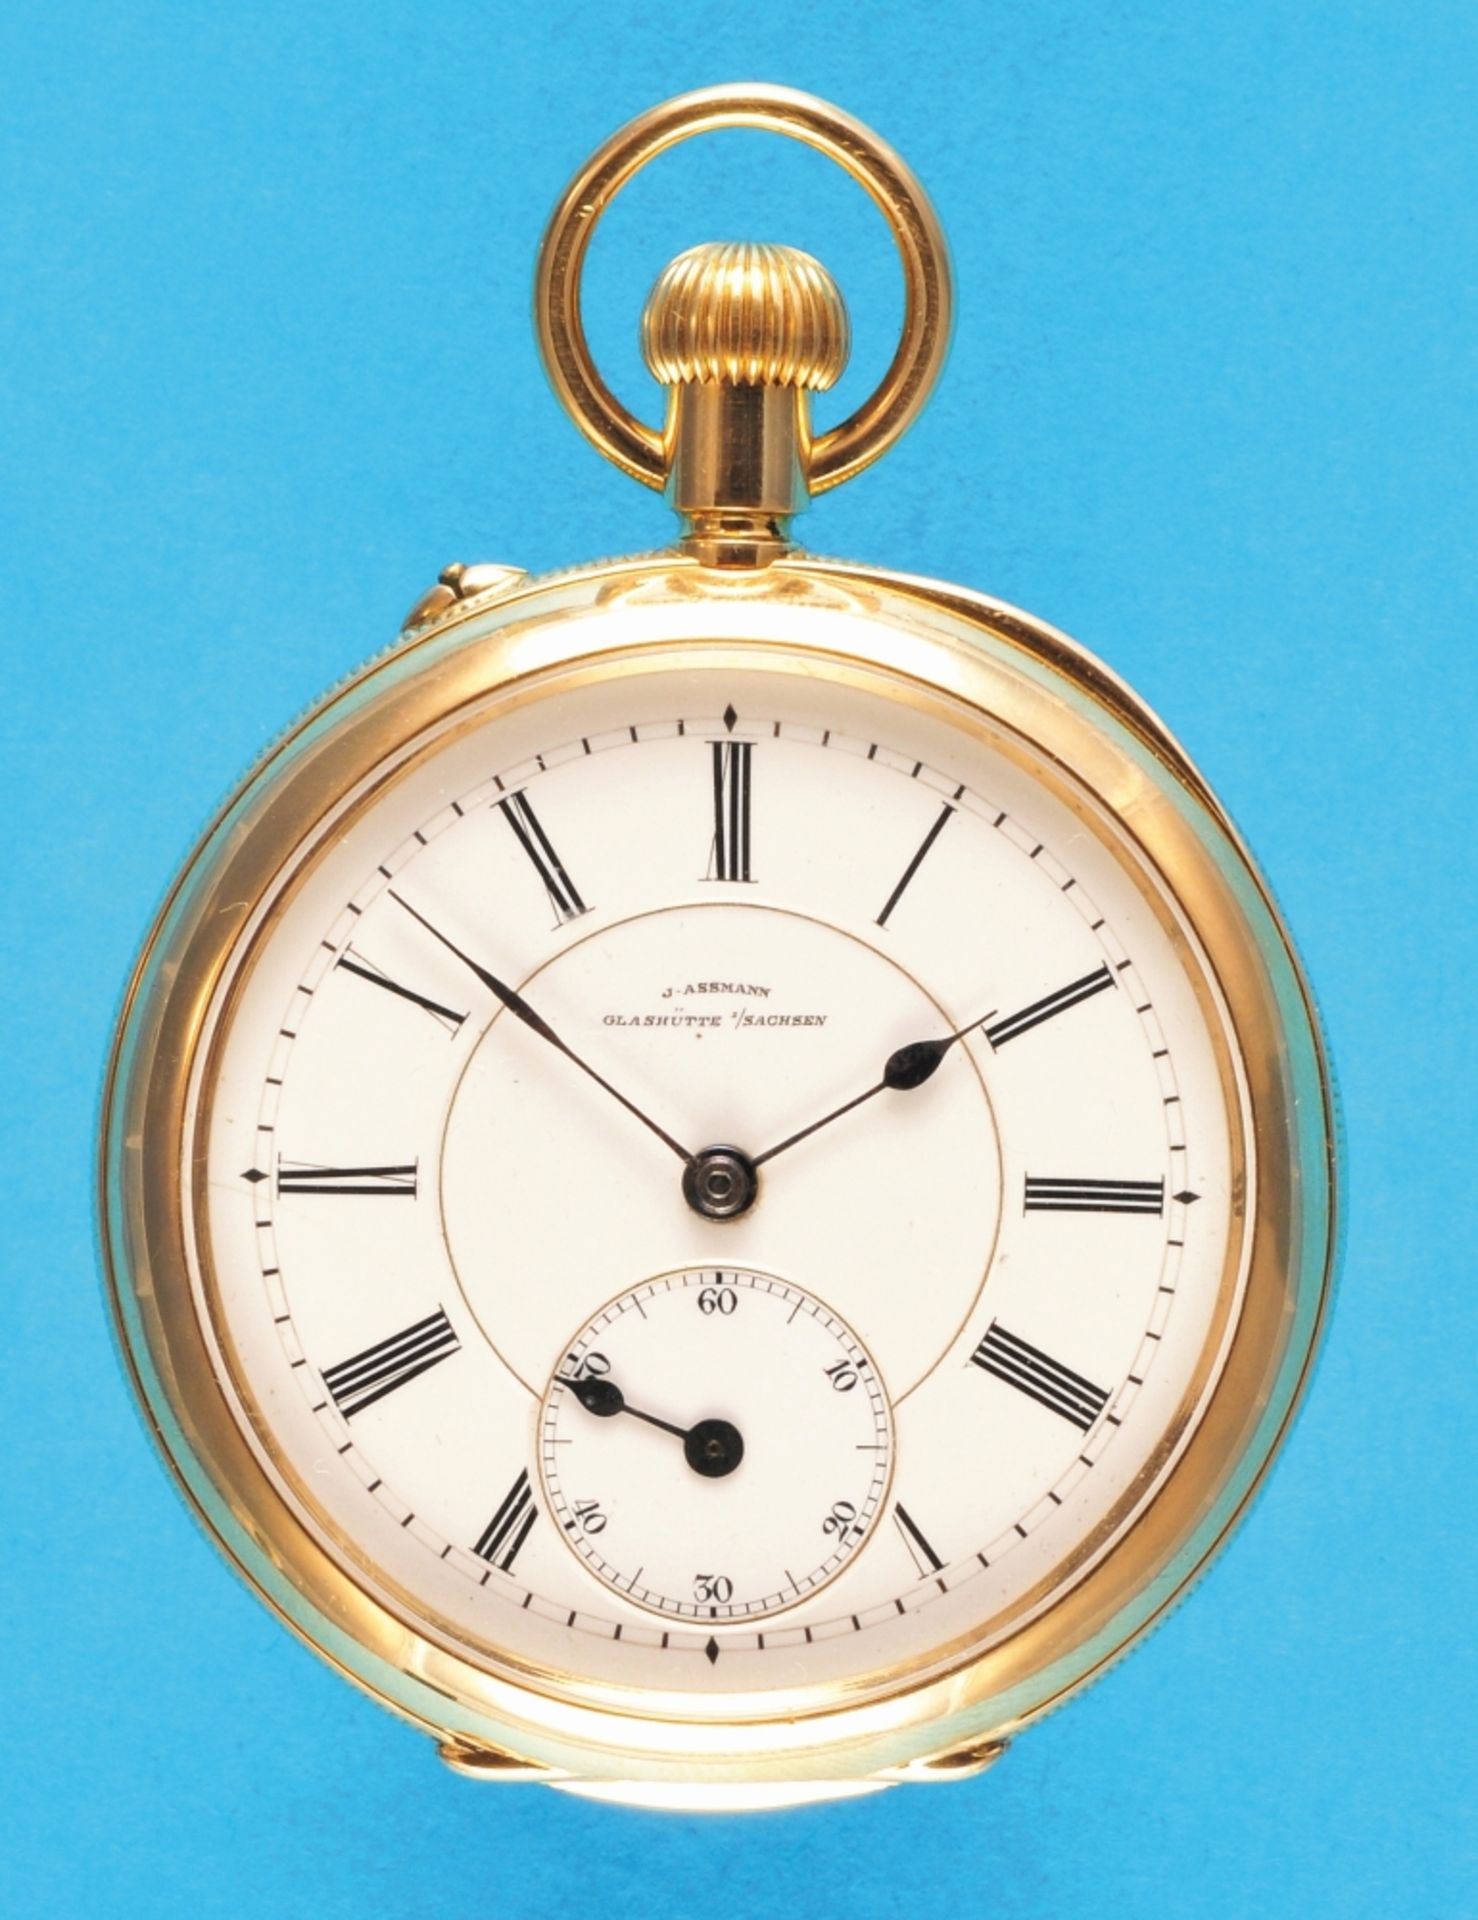 J. Assmann, Glashütte i./S., No. 14747 in 1Aquality, large 18-ct.-2-lid gold pocket watch, 